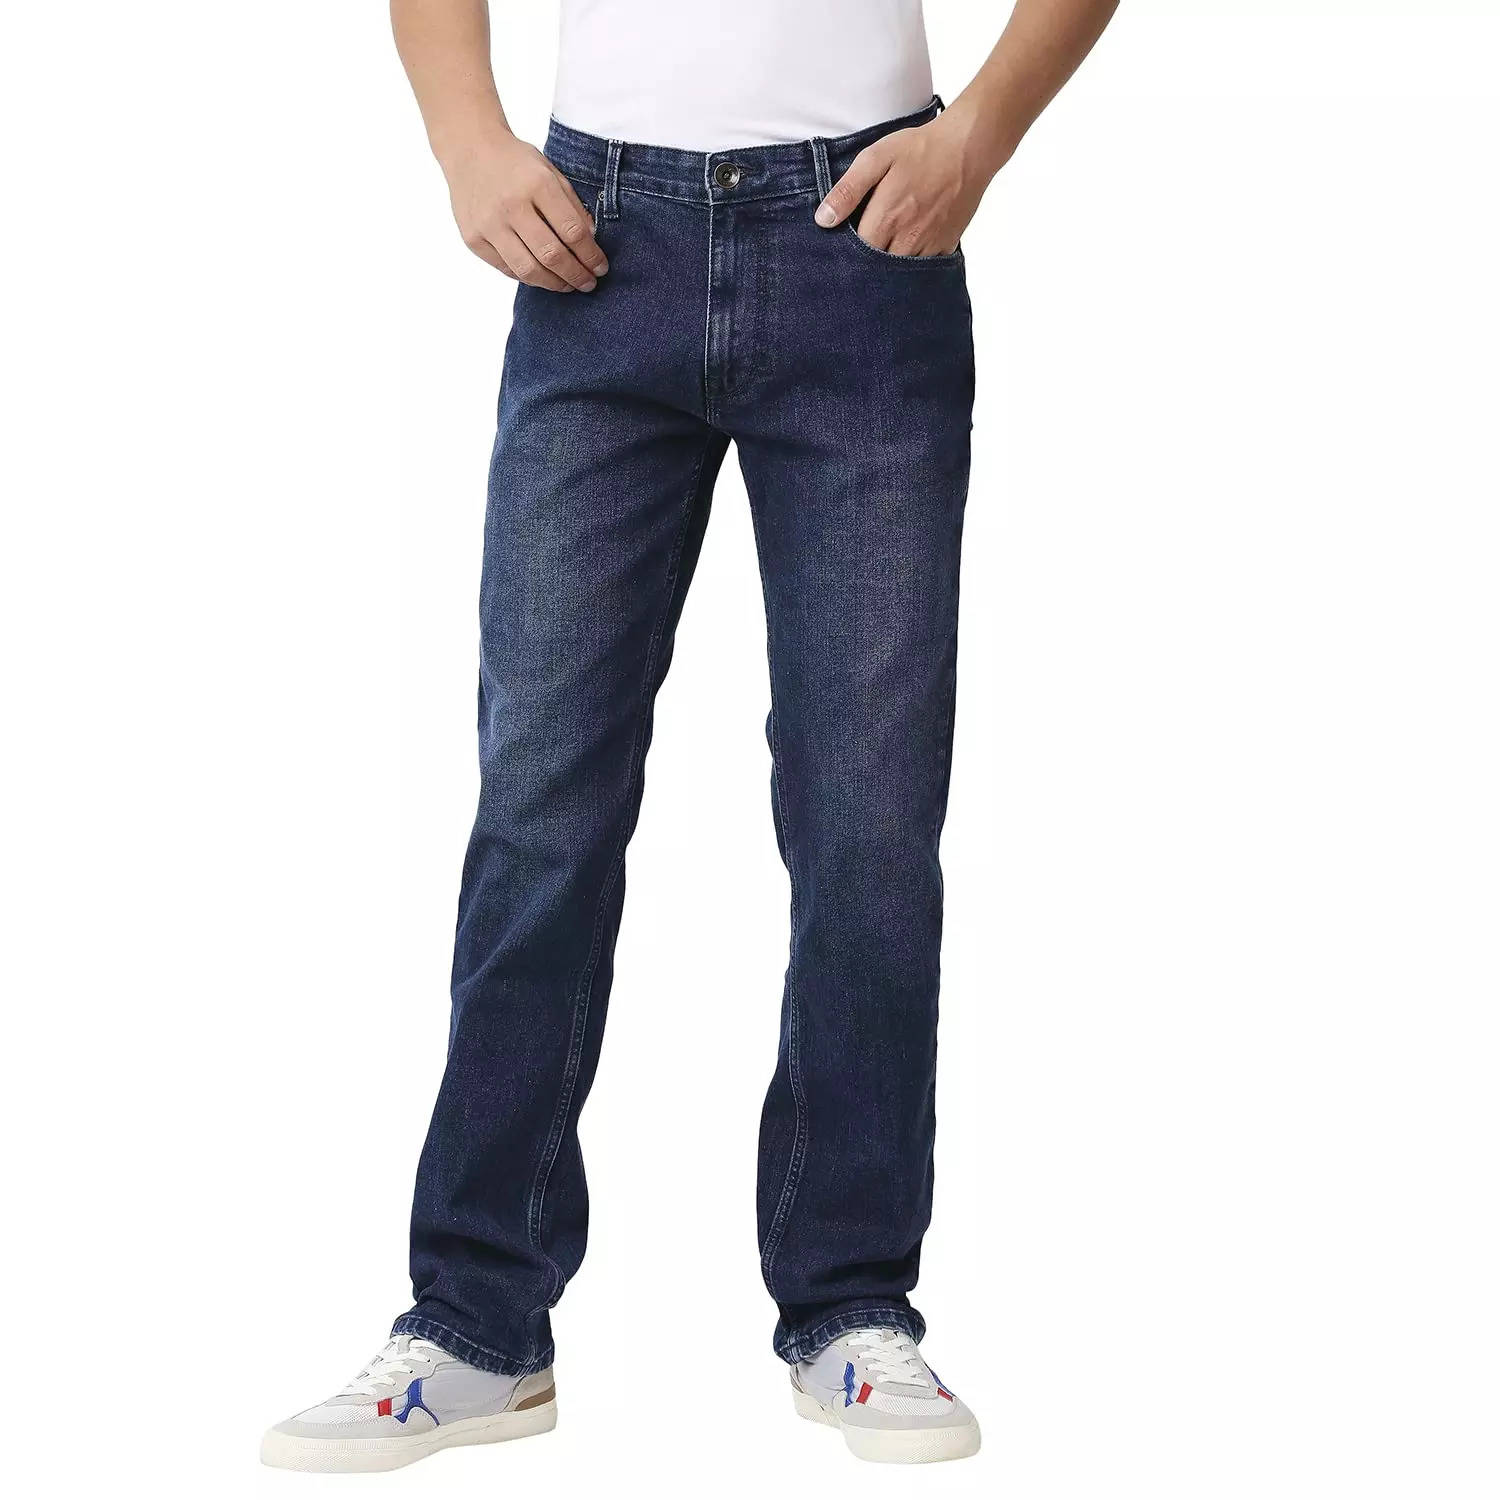 Jeans for Men Under 3000: 6 Best Jeans for Men Under 3000 in India